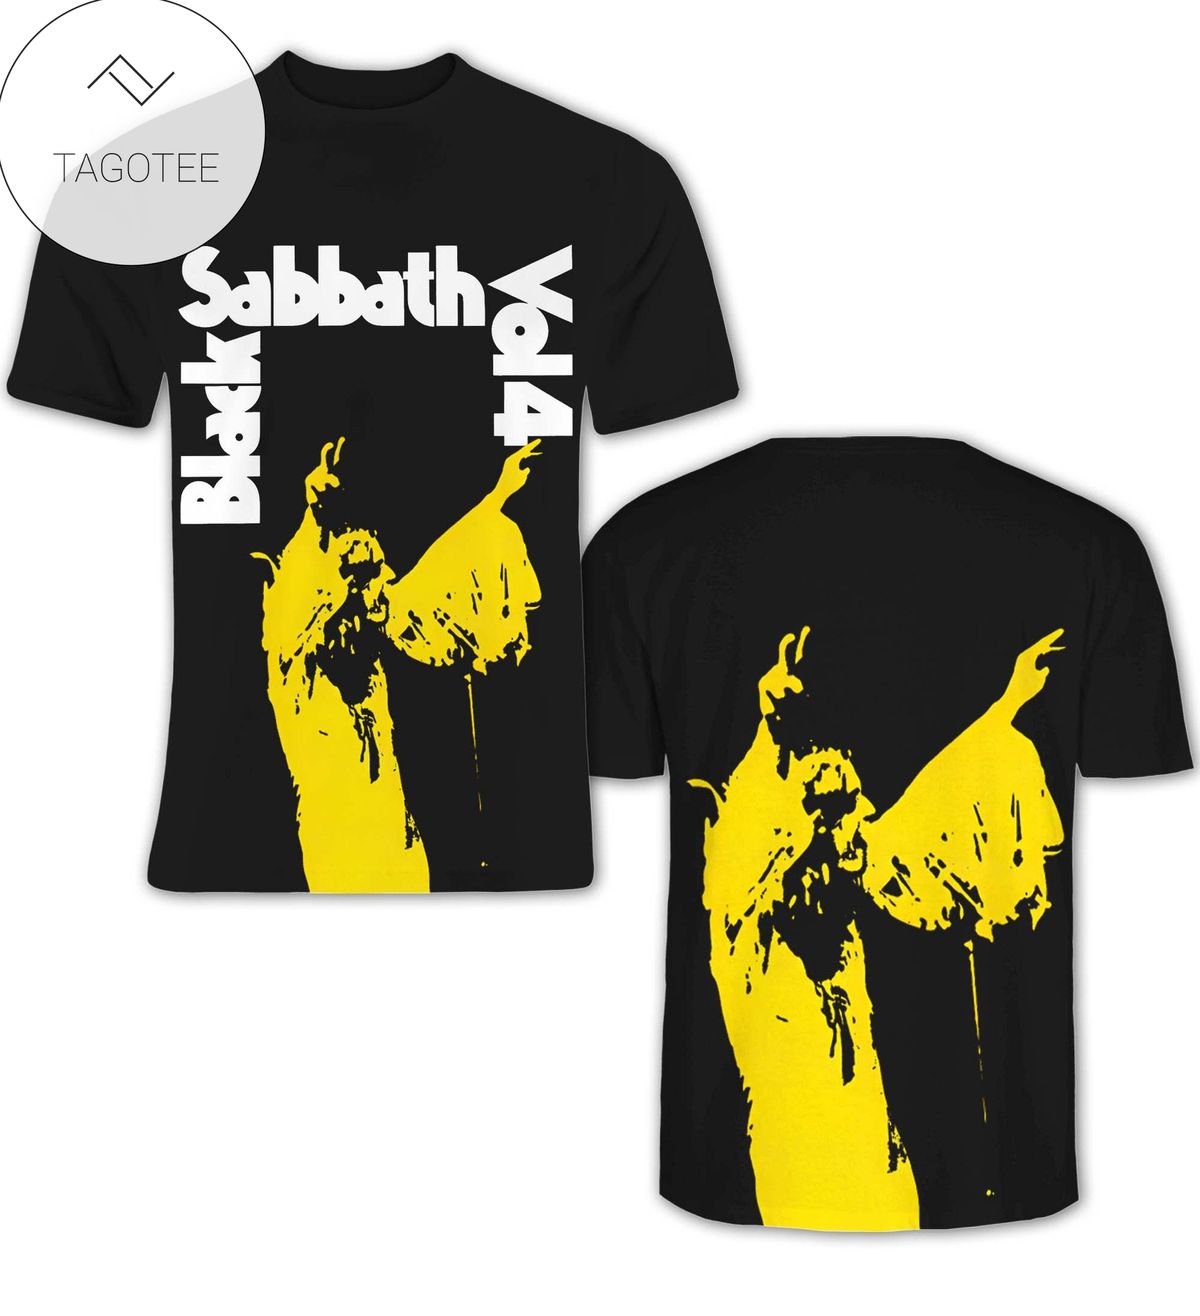 Black Sabbath Vol 4 Album Cover Shirt